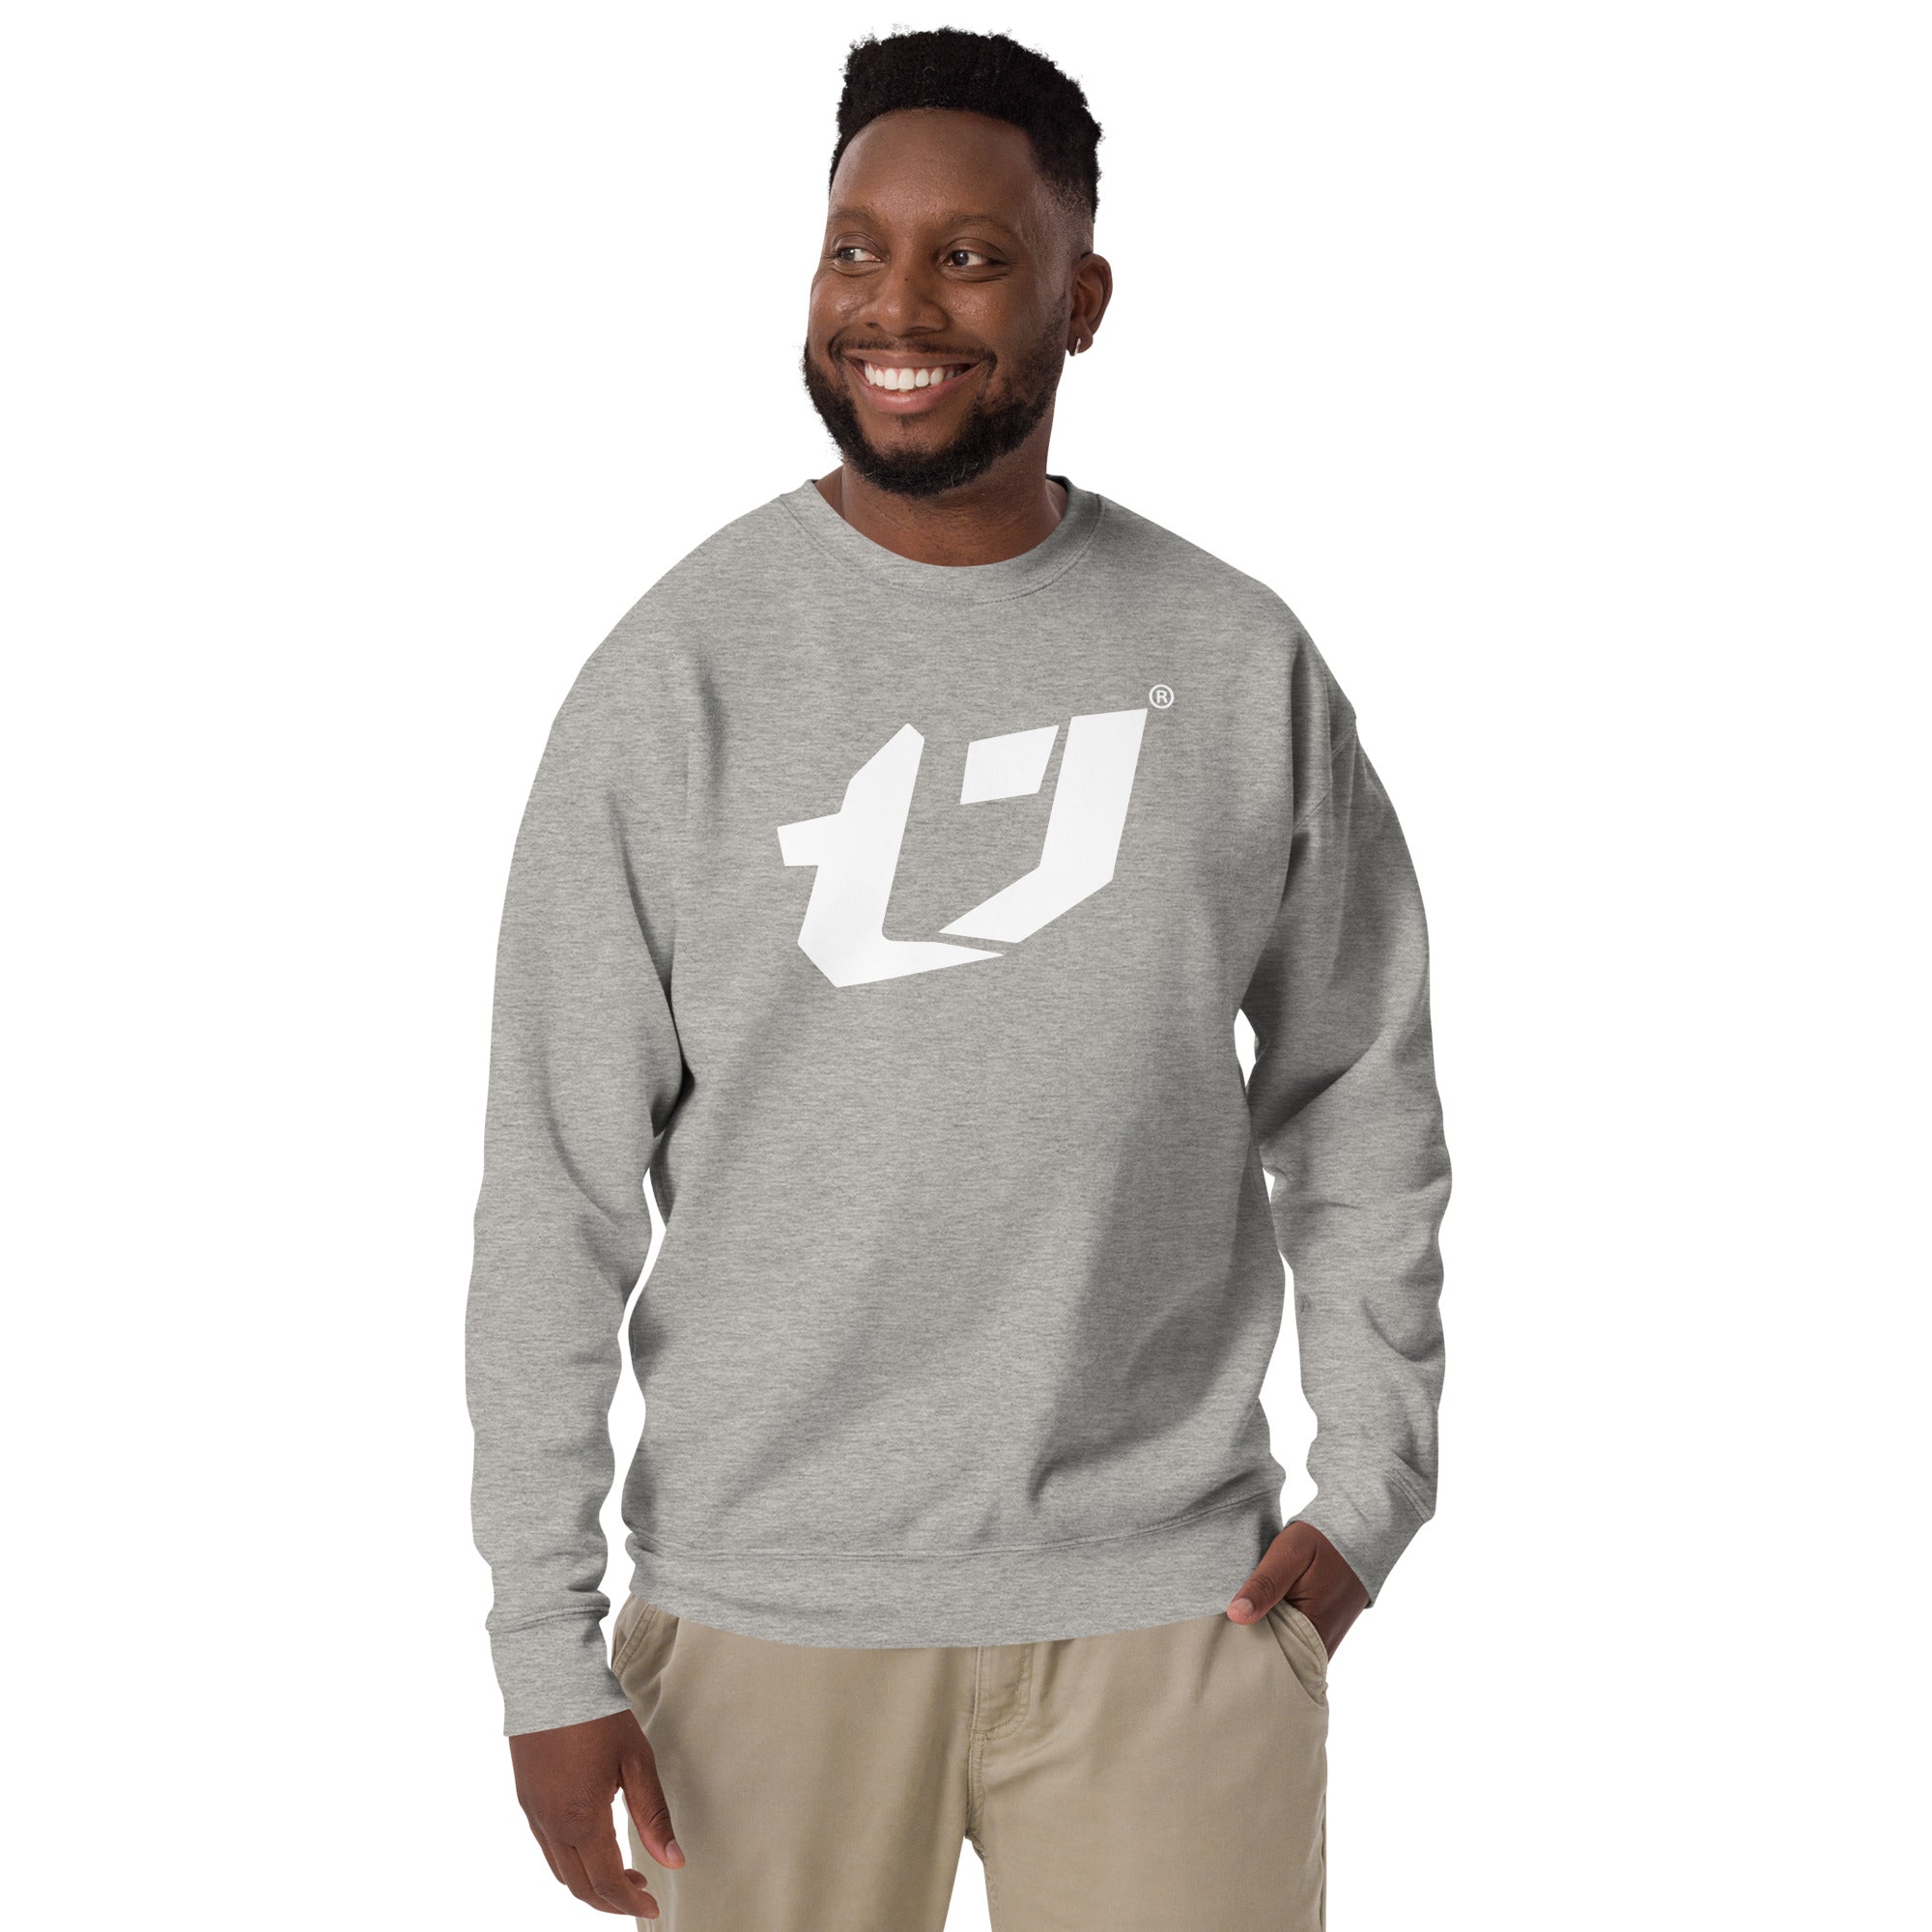 N'Trench Men/Guys White Large Logo Premium Sweatshirt